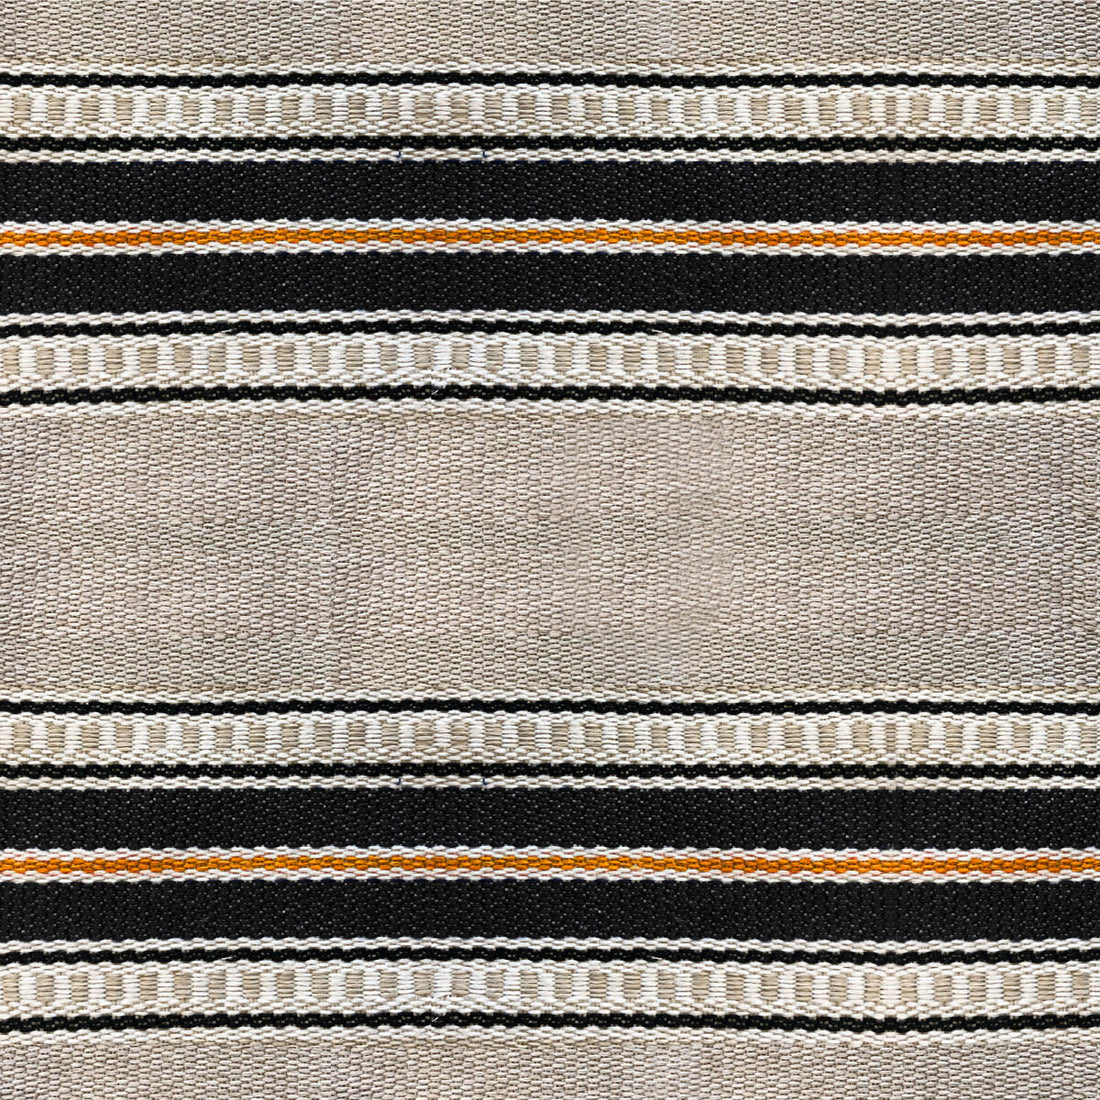 Adam fabric in teja color - pattern LCT1068.001.0 - by Gaston y Daniela in the Lorenzo Castillo VI collection